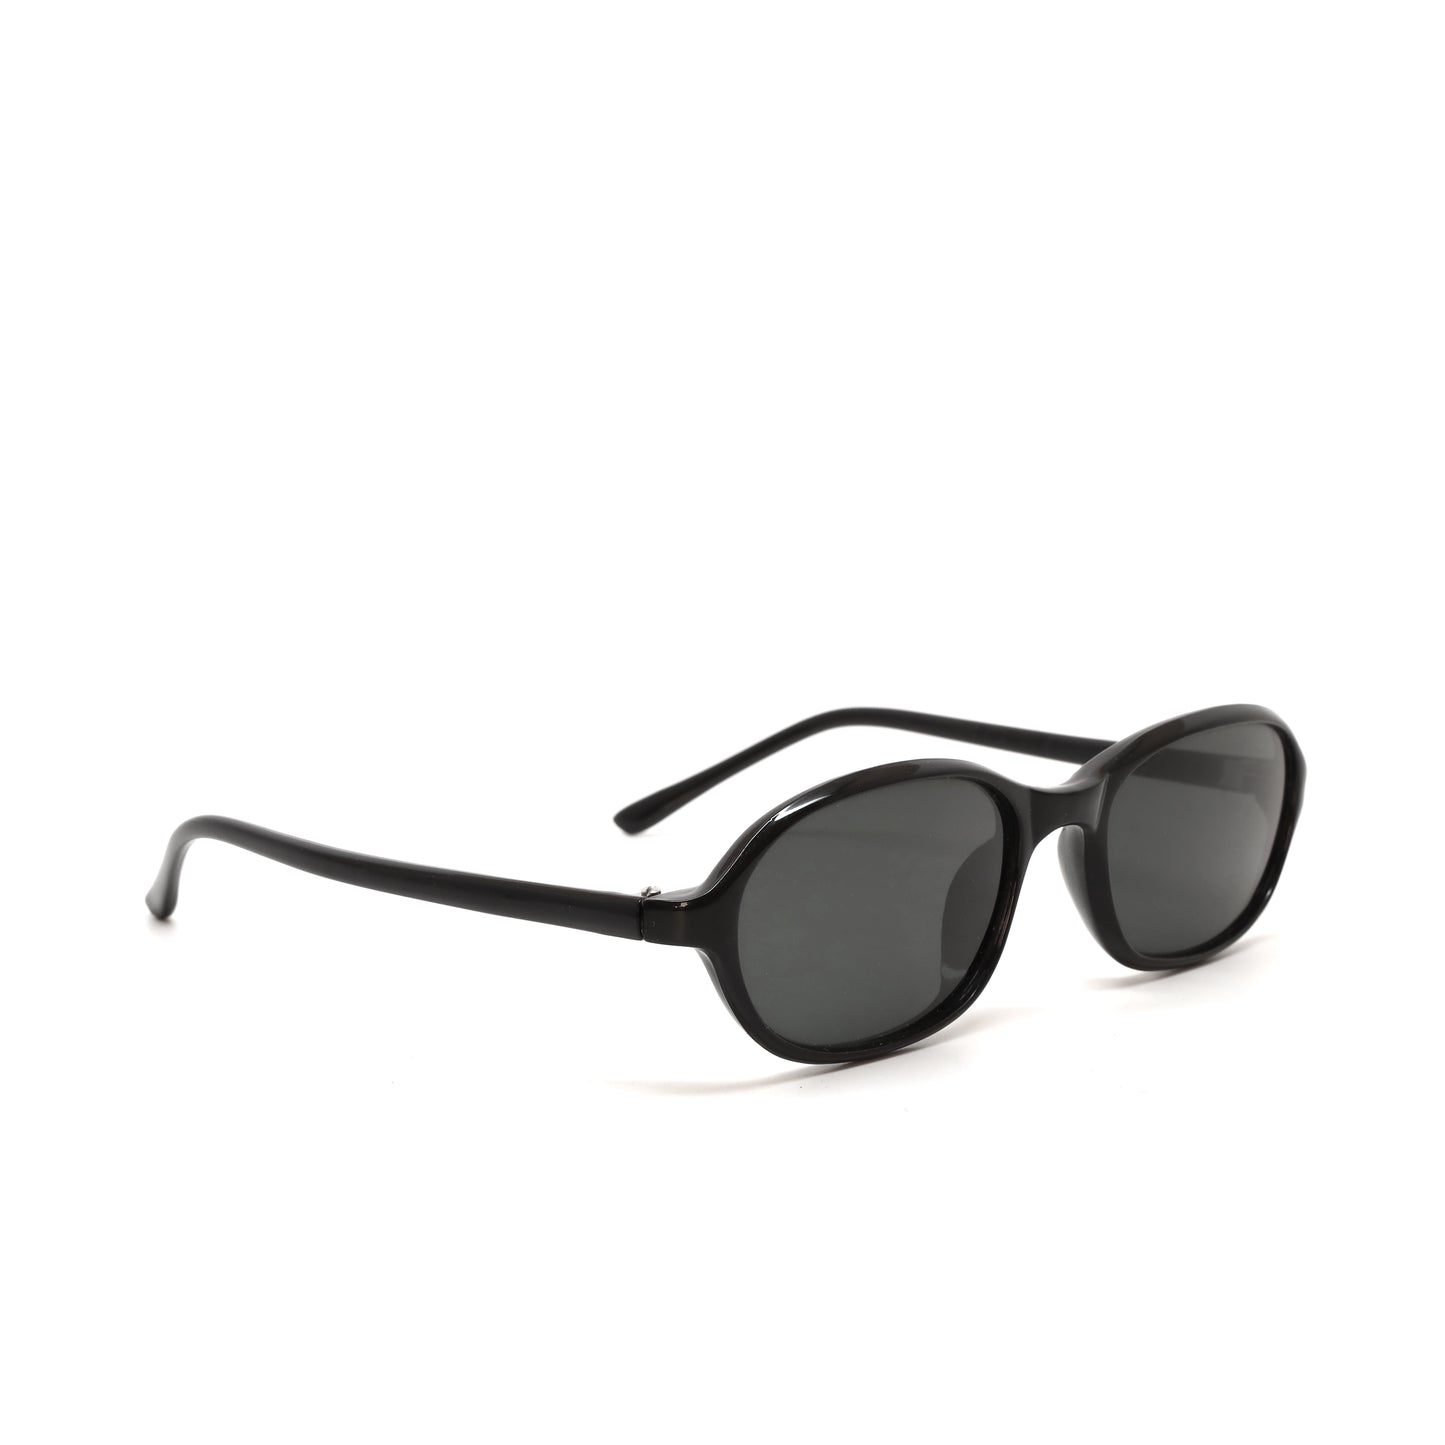 Vintage Standard Size 90s Deadstock Oval Frame Sunglasses - Black